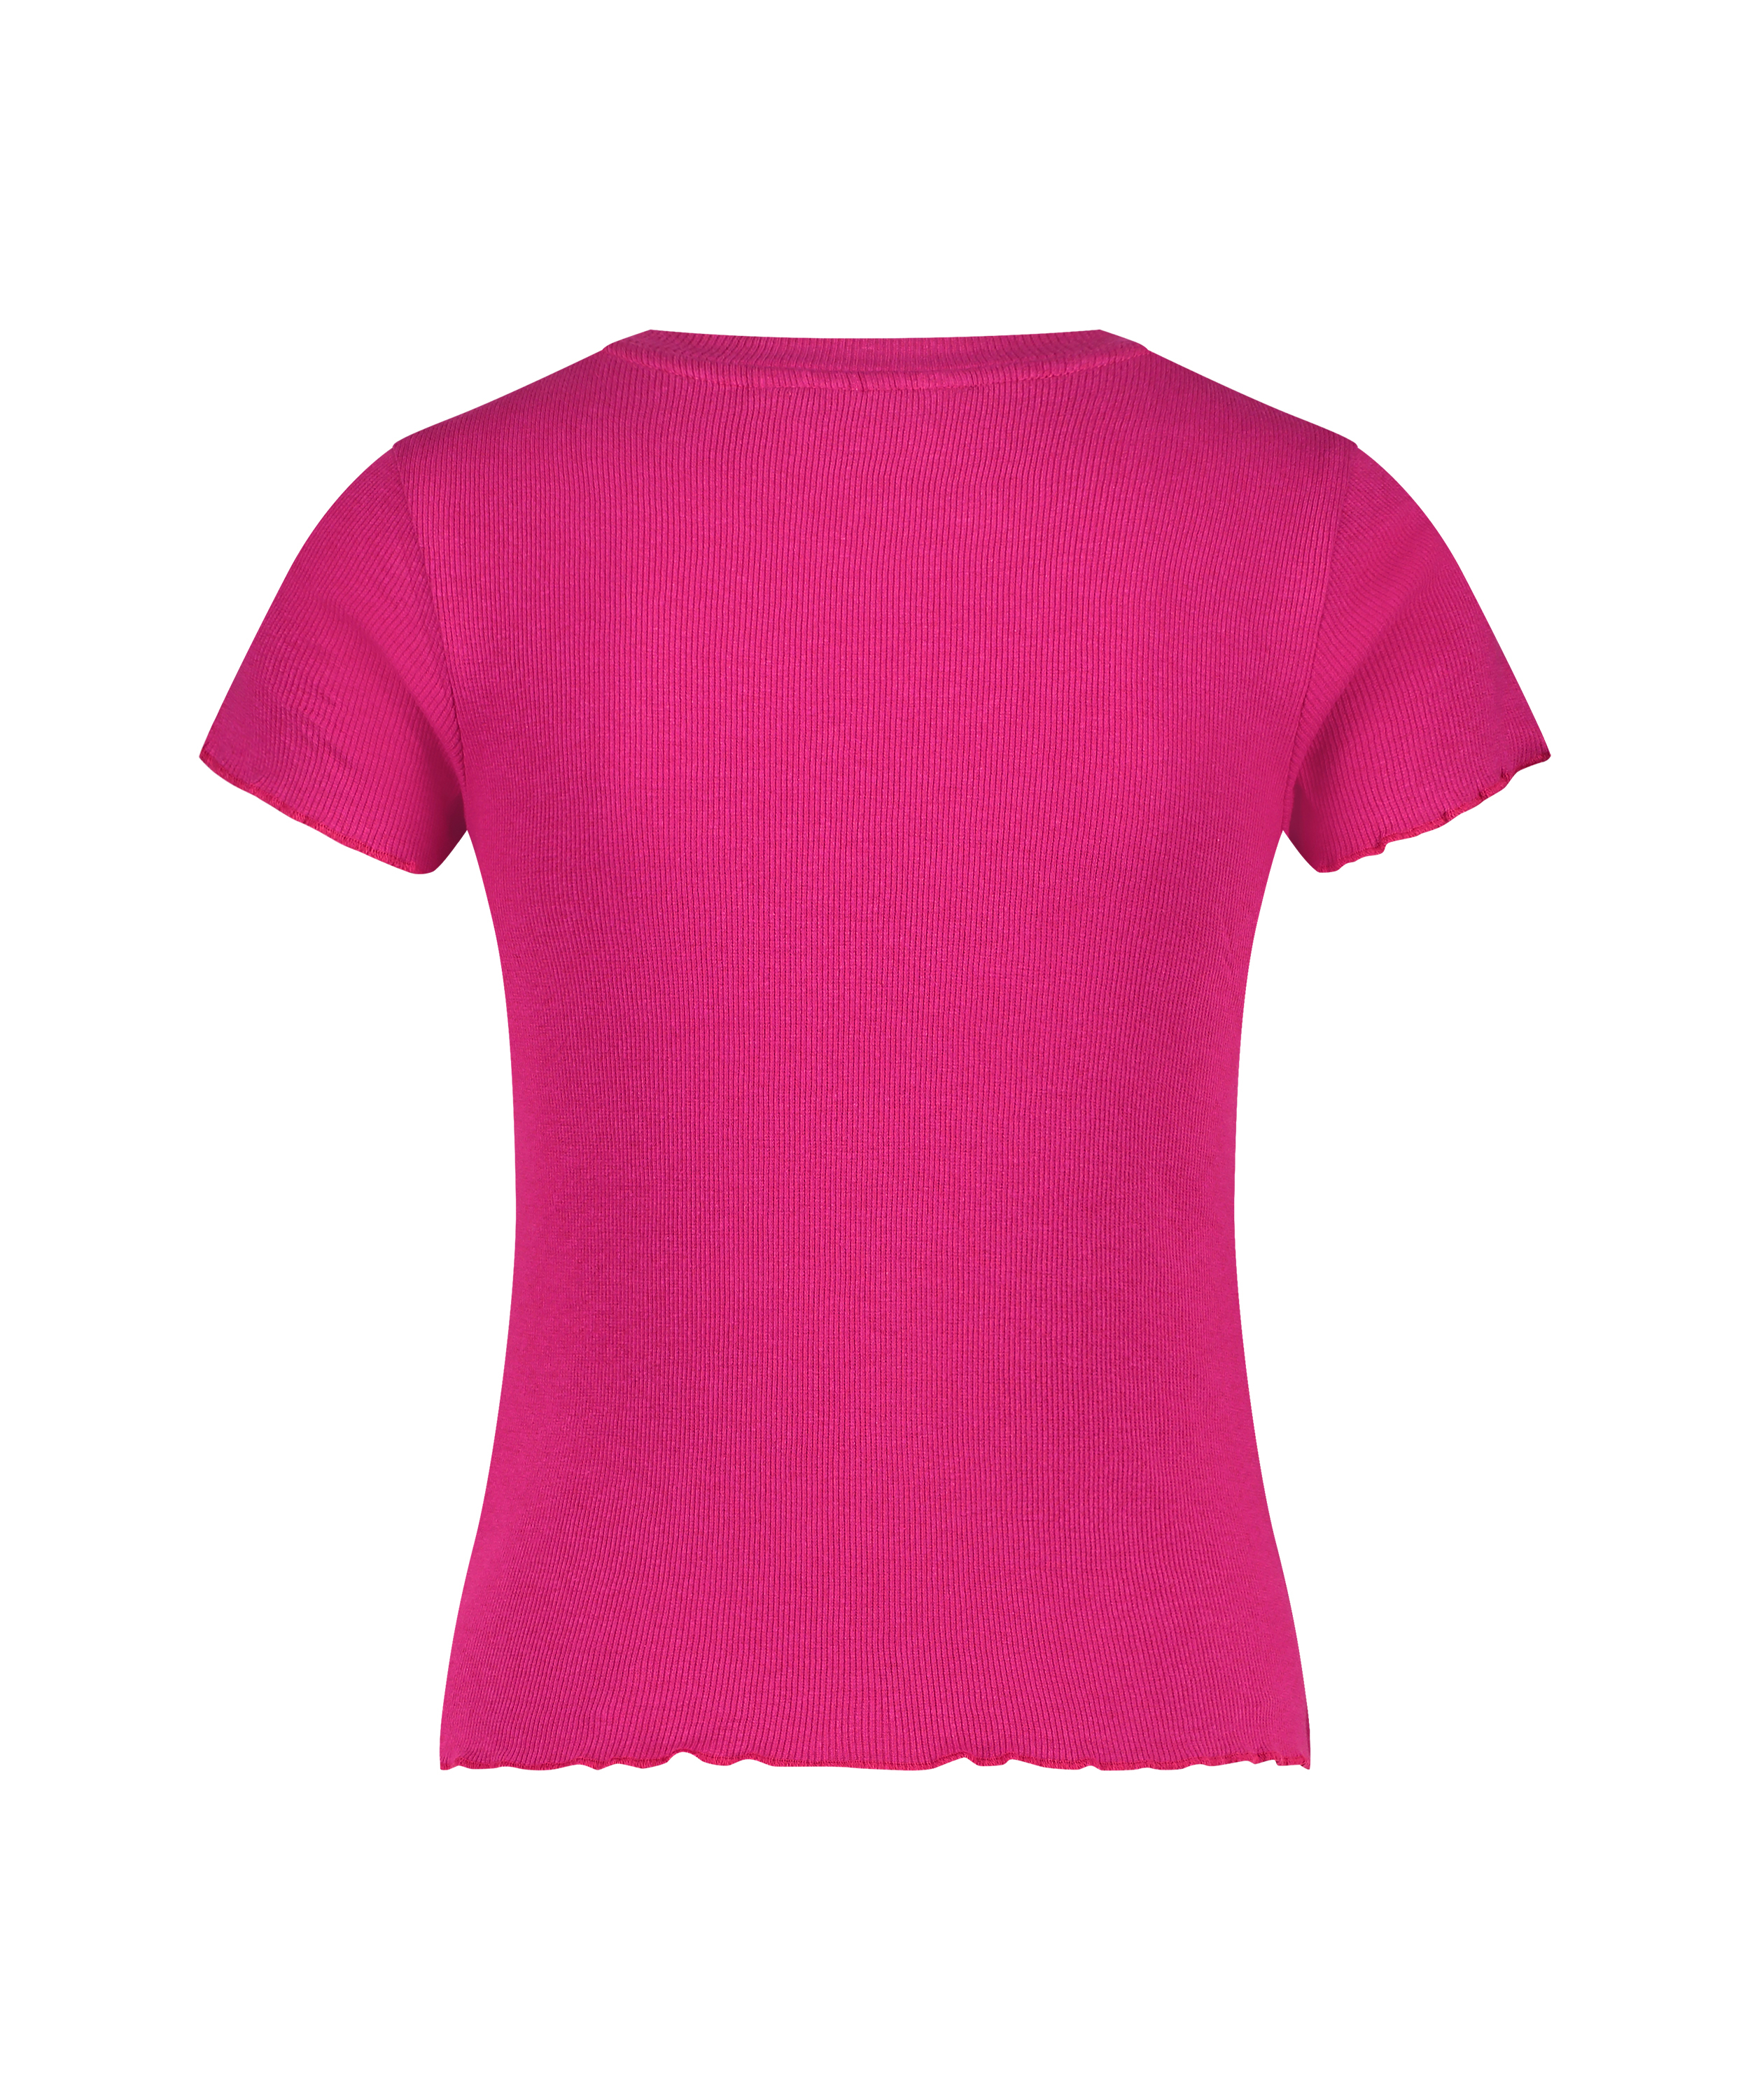 Rib shirt with short sleeves, Pink, main